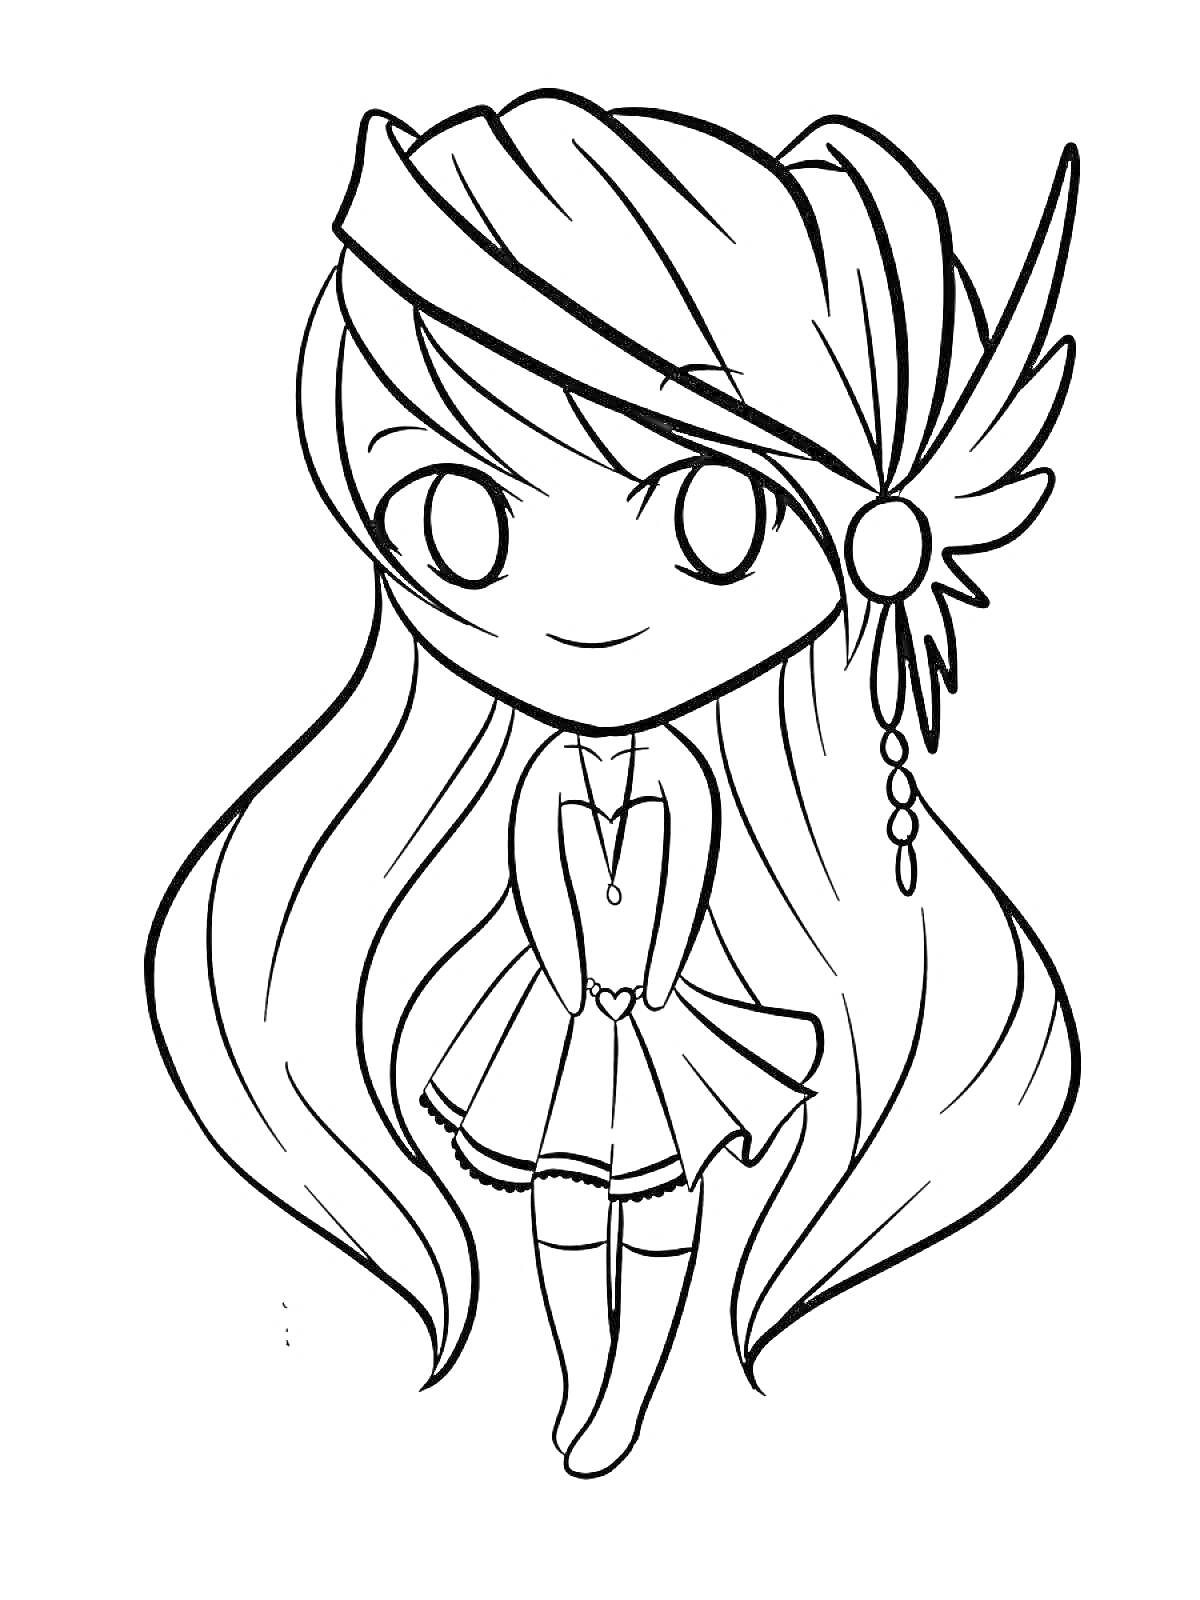 Раскраска Девочка с длинными волосами в повязке и крылом, в платье с подвеской